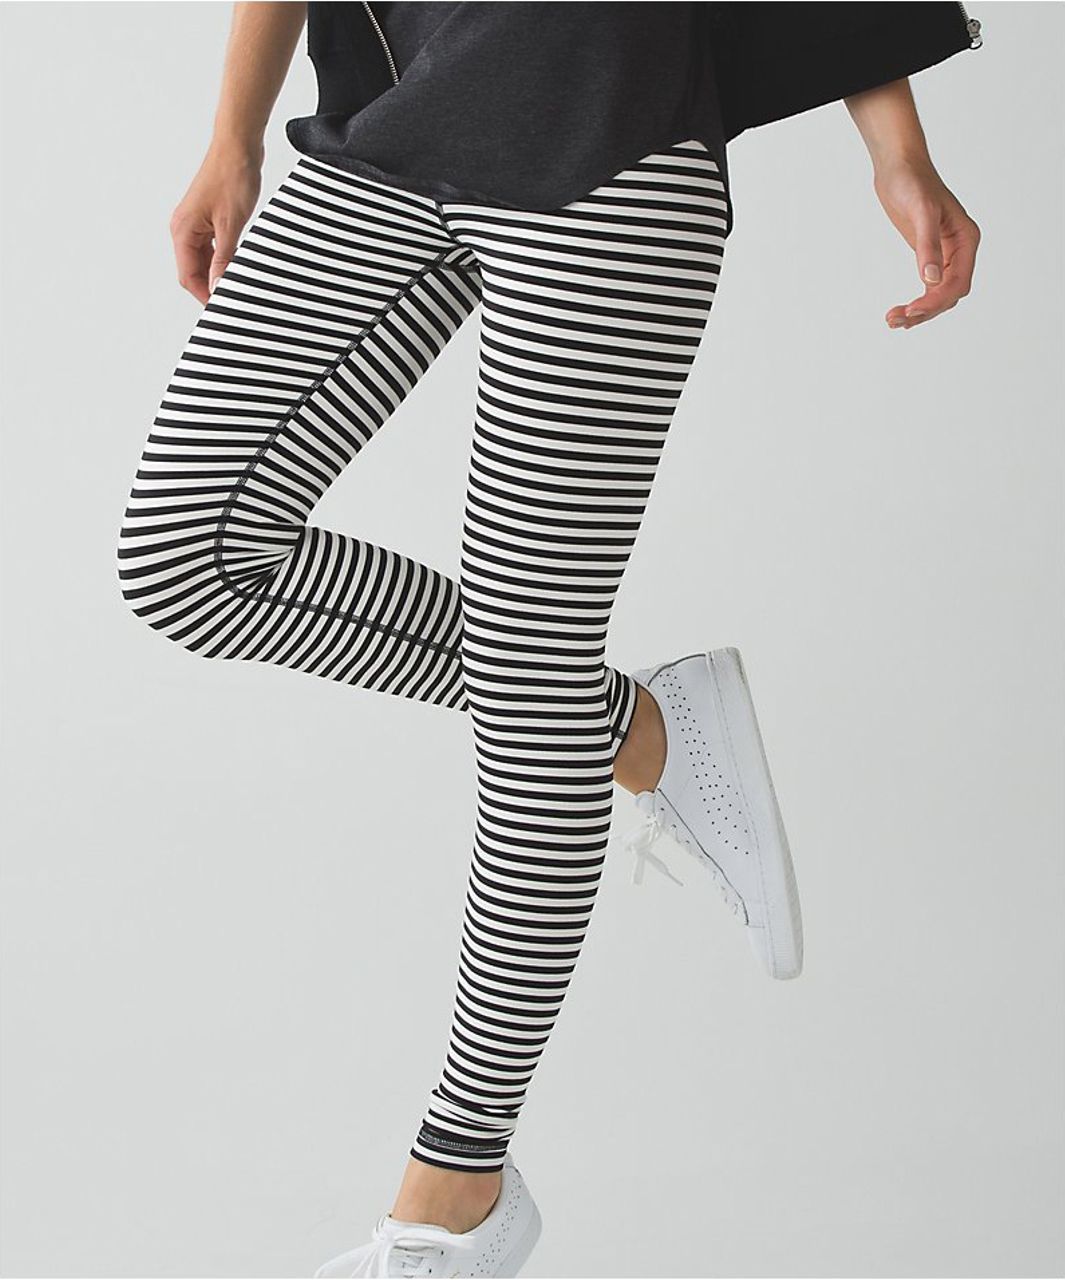 black and white striped lululemon leggings